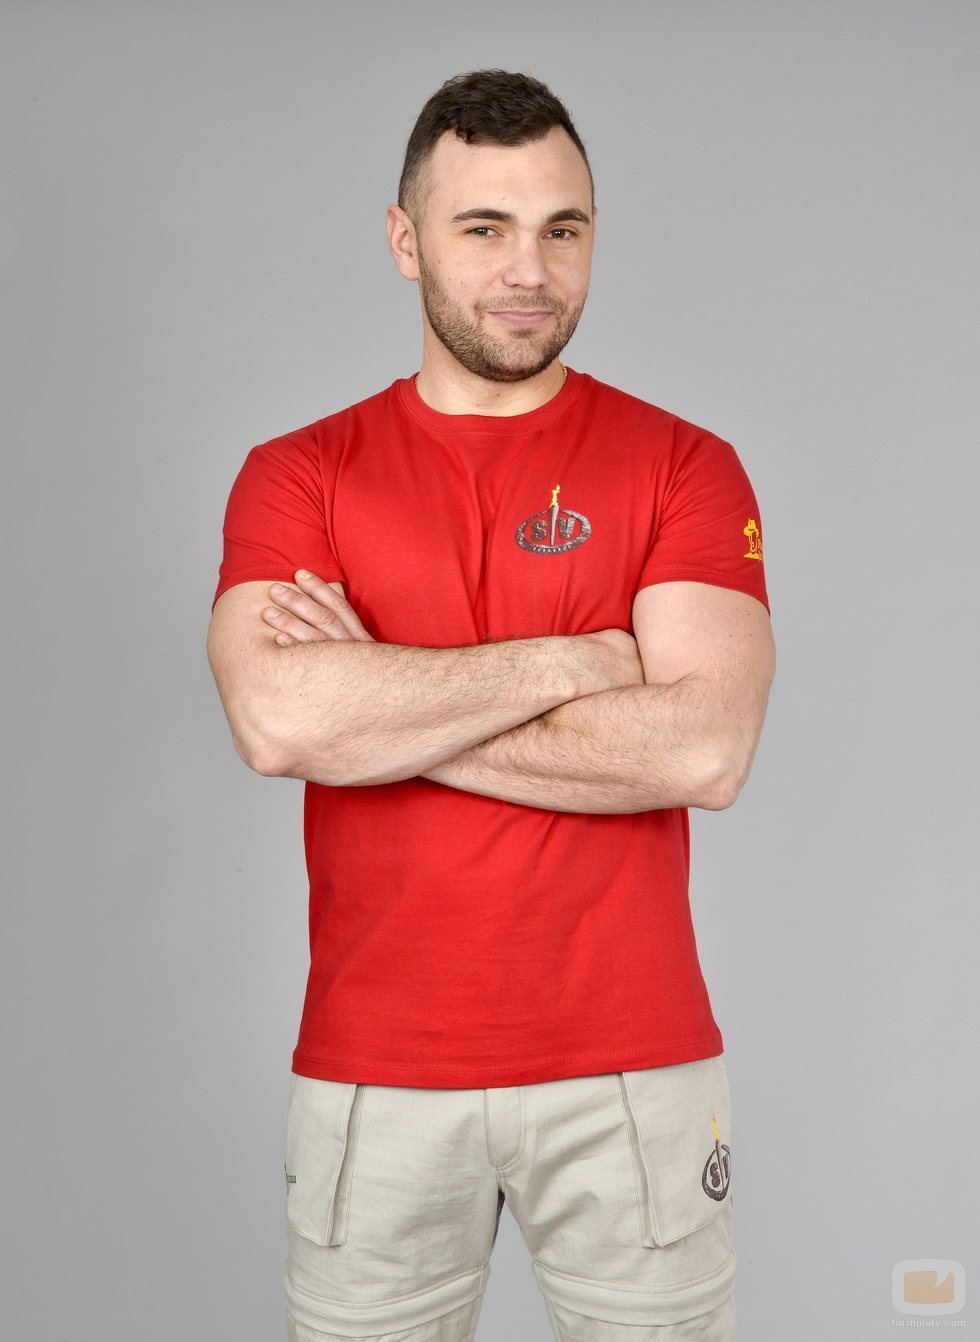 Cristian Suescun posa como concursante de 'Supervivientes 2020'